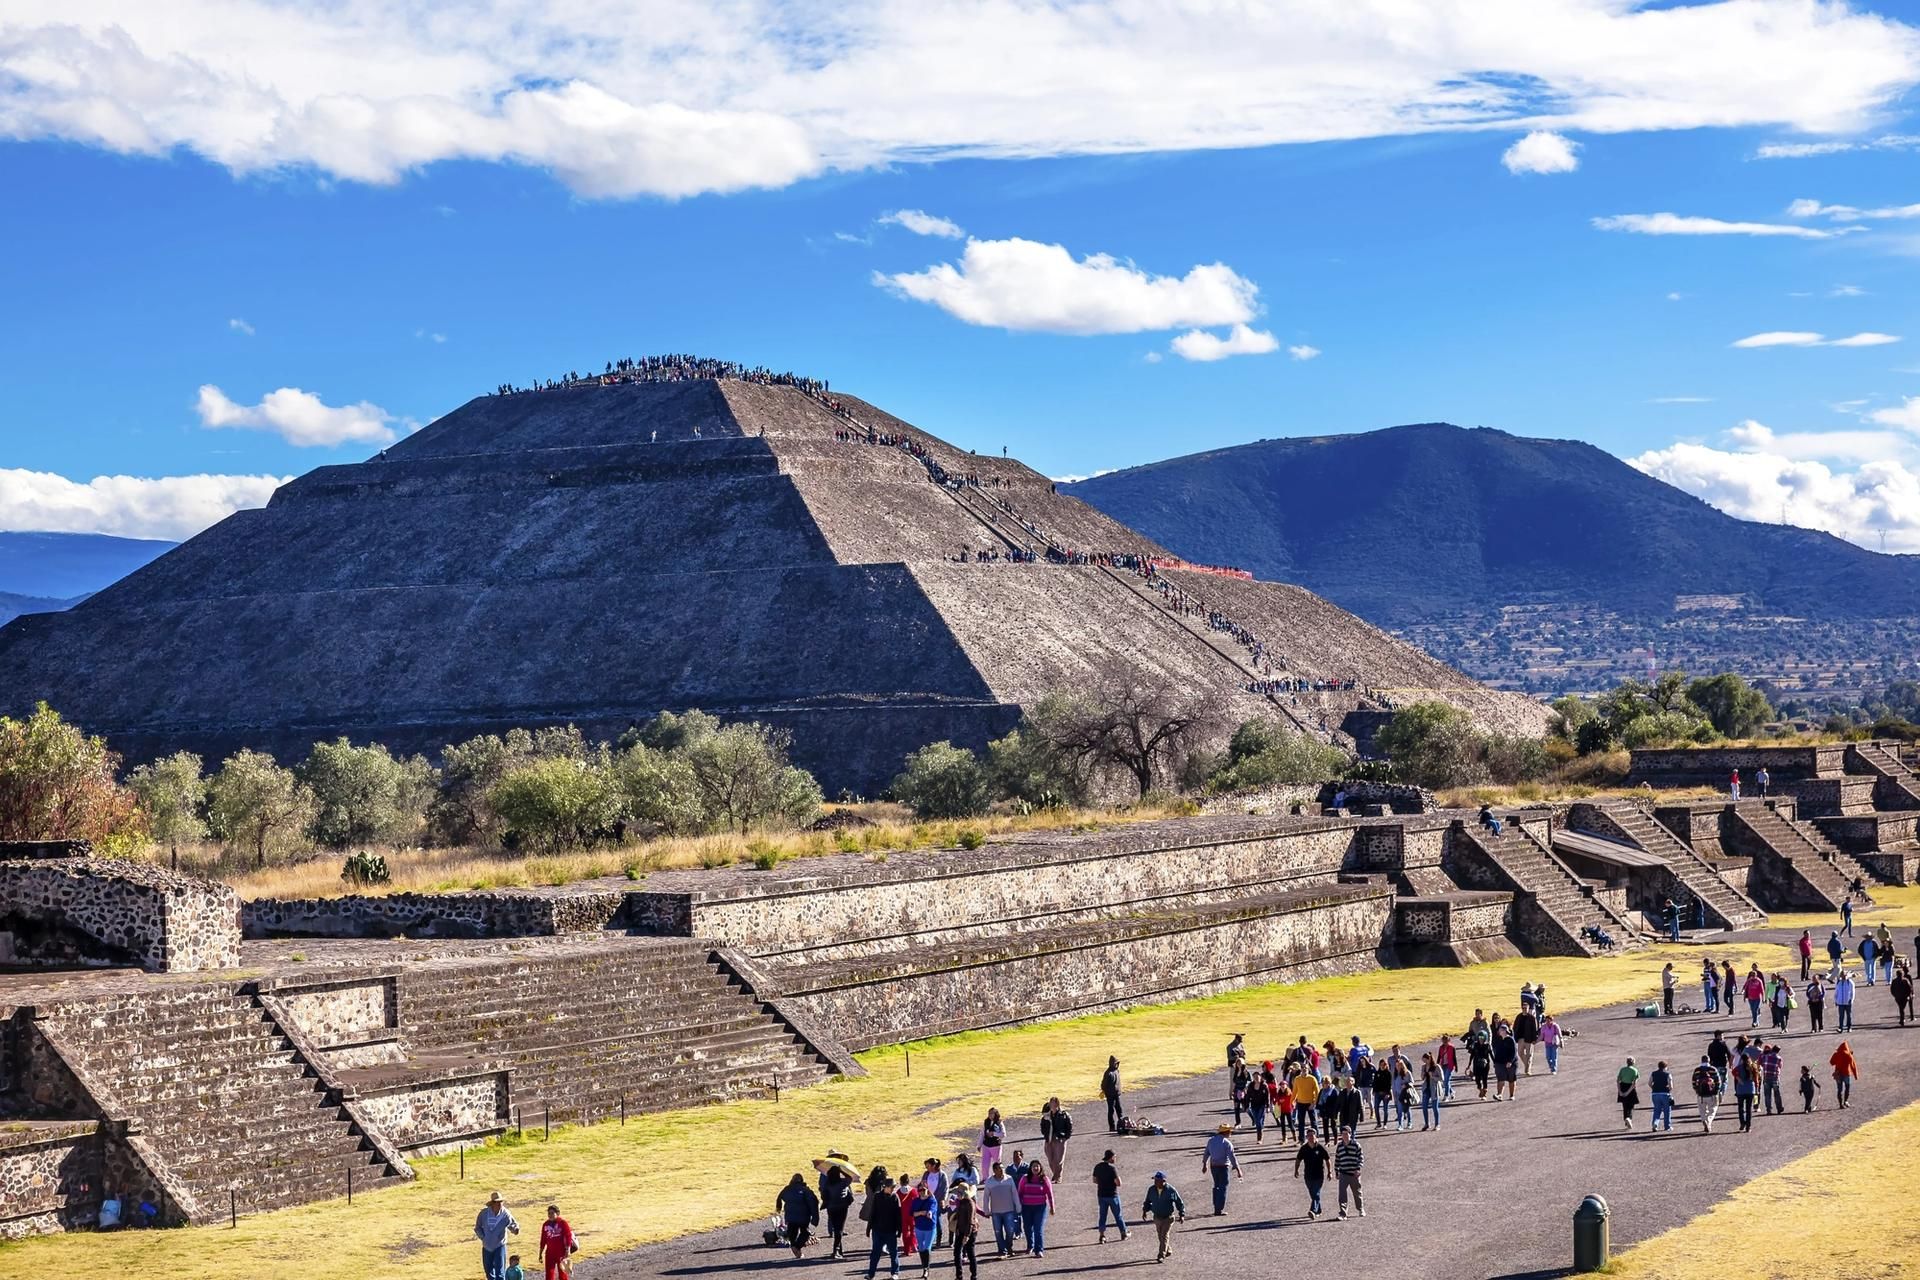 שדרת המתים ופירמידת השמש ב-Teotihuacán בסן חואן Teotihuacan, מקסיקו

באדיבות קרן האנדרטאות העולמית